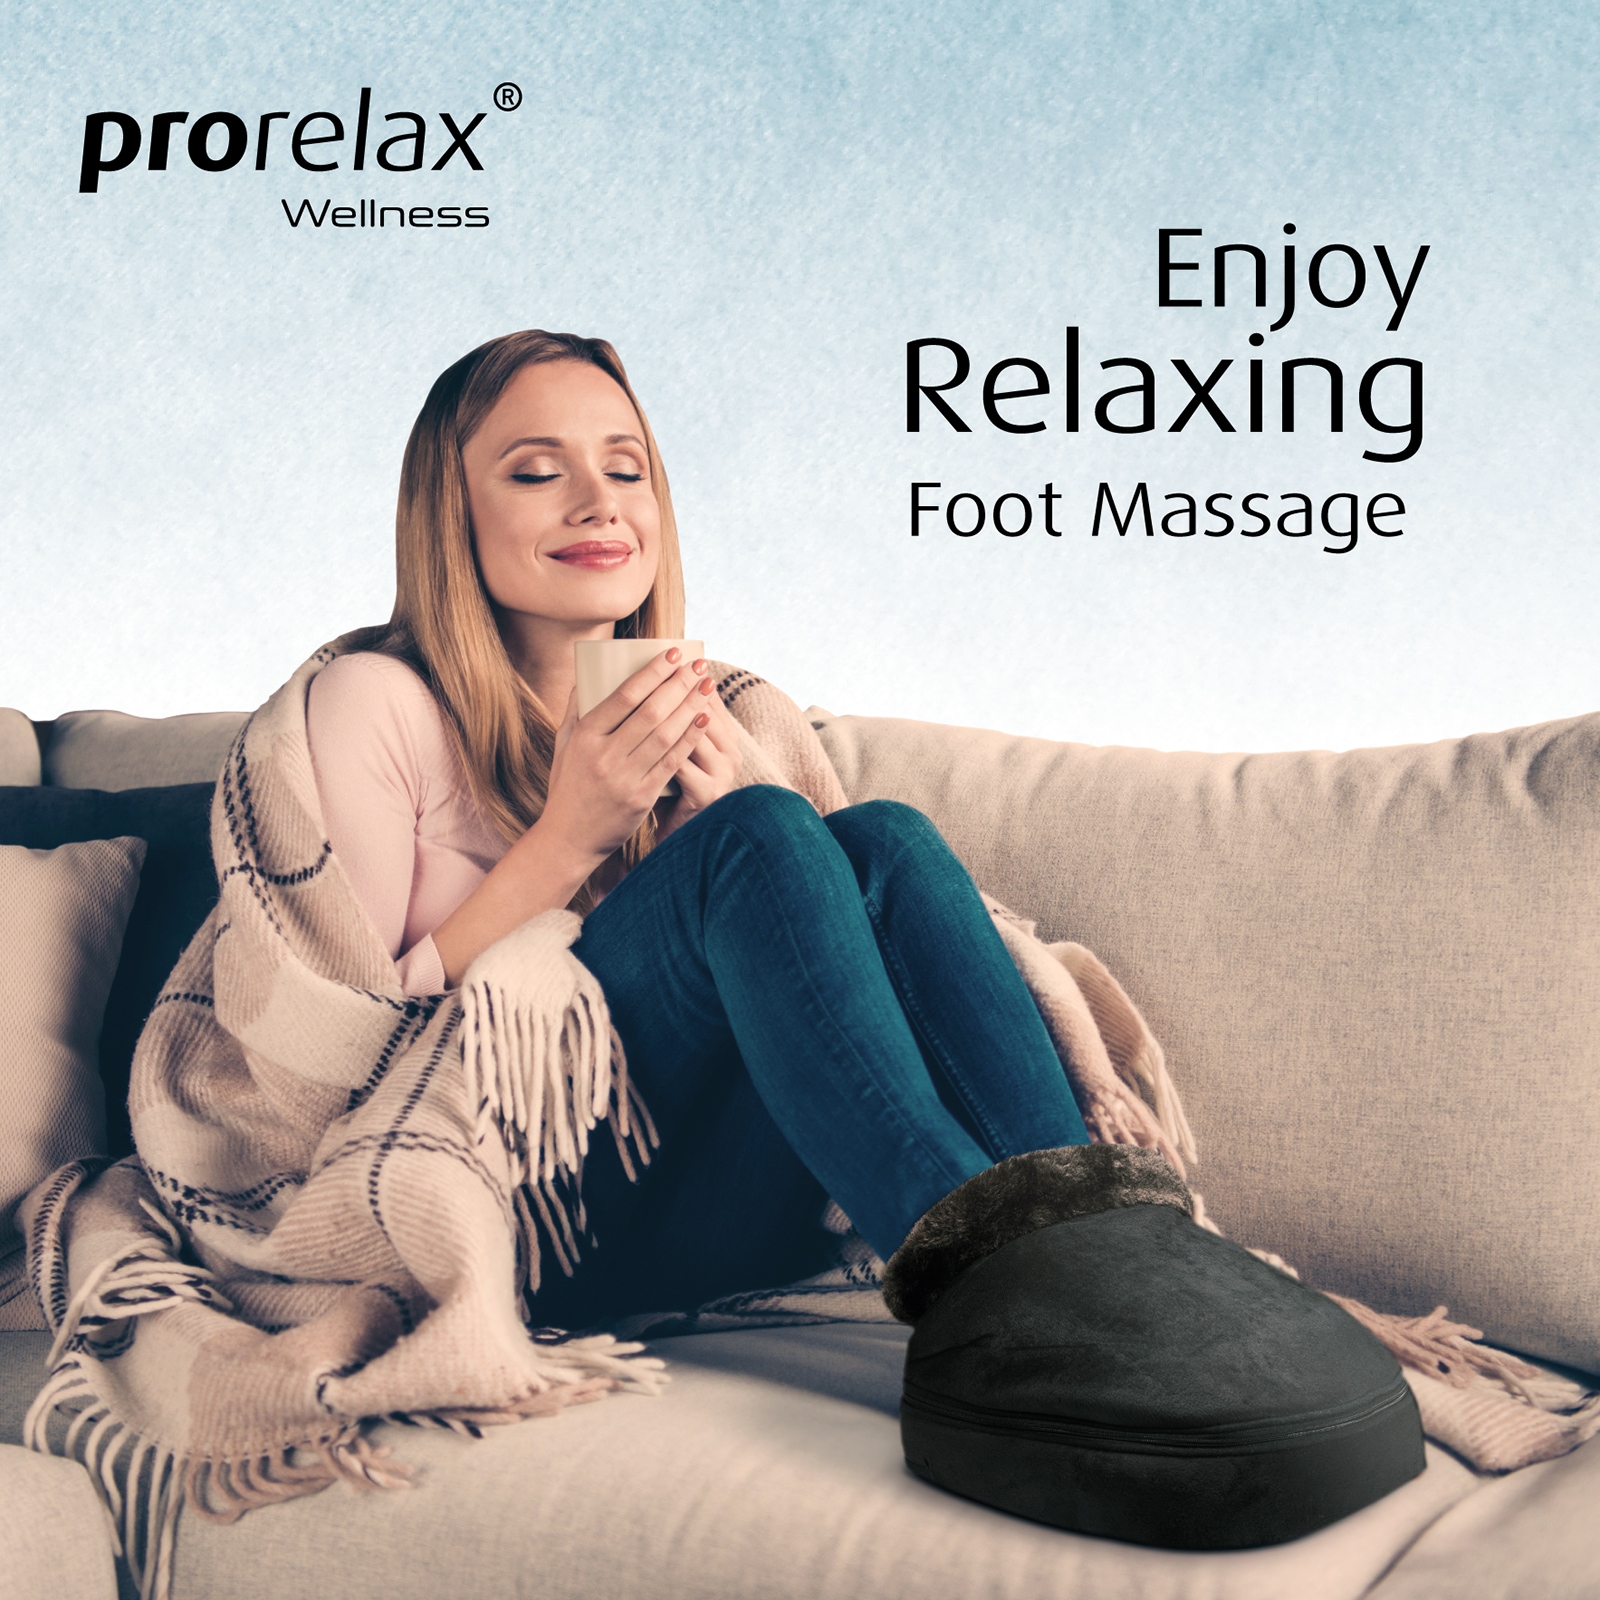 prorelax Shiatsu-Fußmassagegerät »12119 Shiatsu Fuß-Massager«, (2 tlg.), mit zuschaltbarer Wärme-Funktion